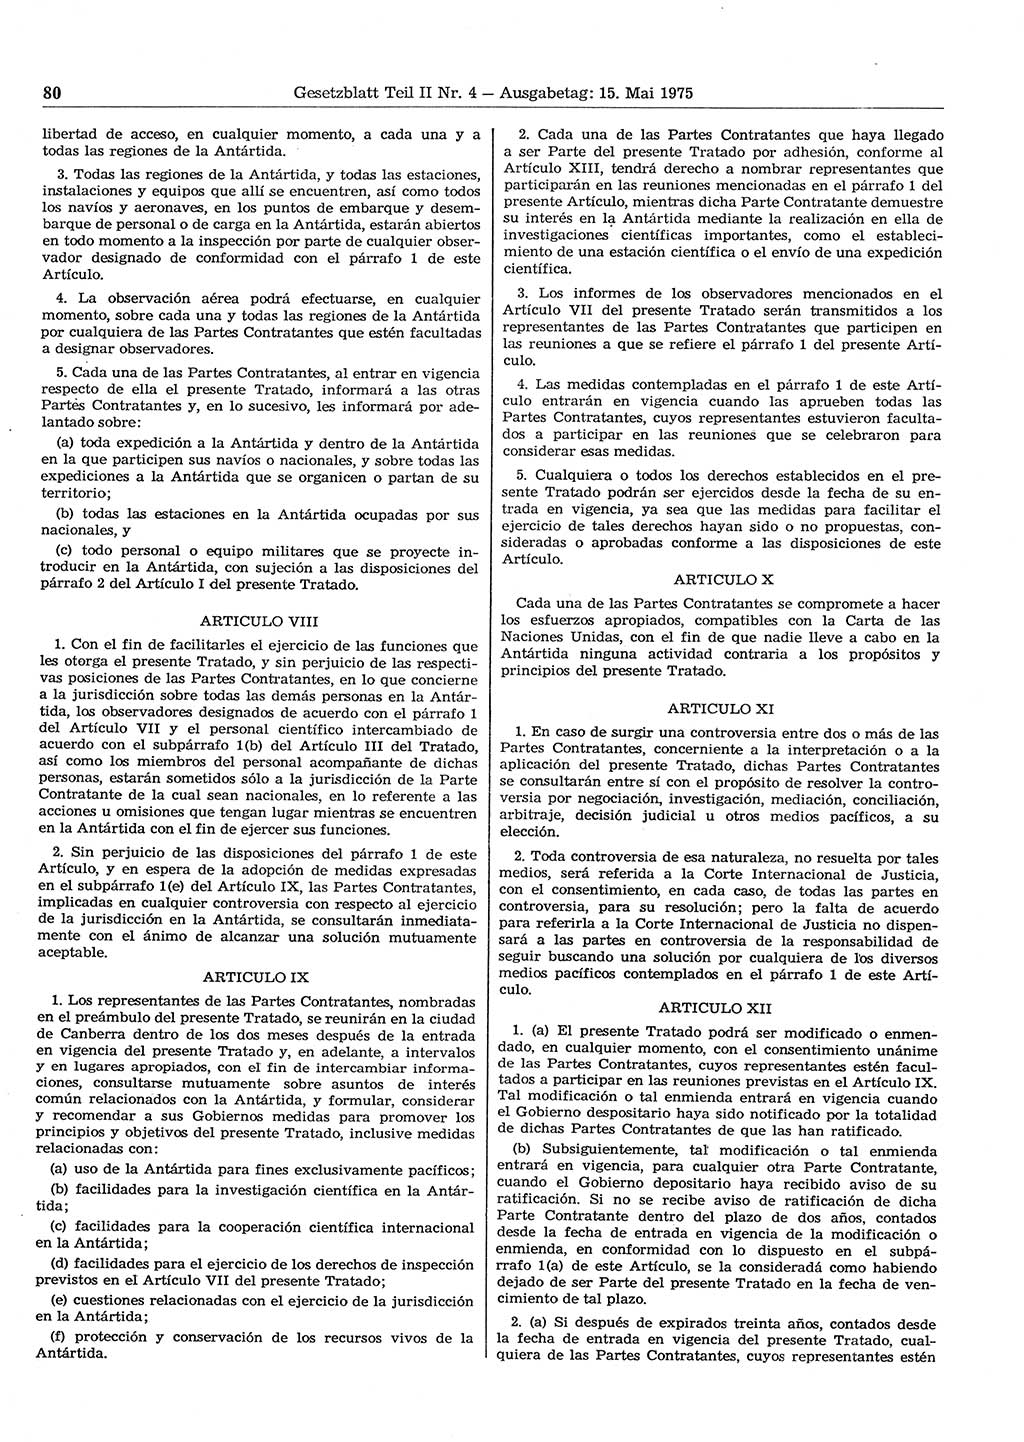 Gesetzblatt (GBl.) der Deutschen Demokratischen Republik (DDR) Teil ⅠⅠ 1975, Seite 80 (GBl. DDR ⅠⅠ 1975, S. 80)